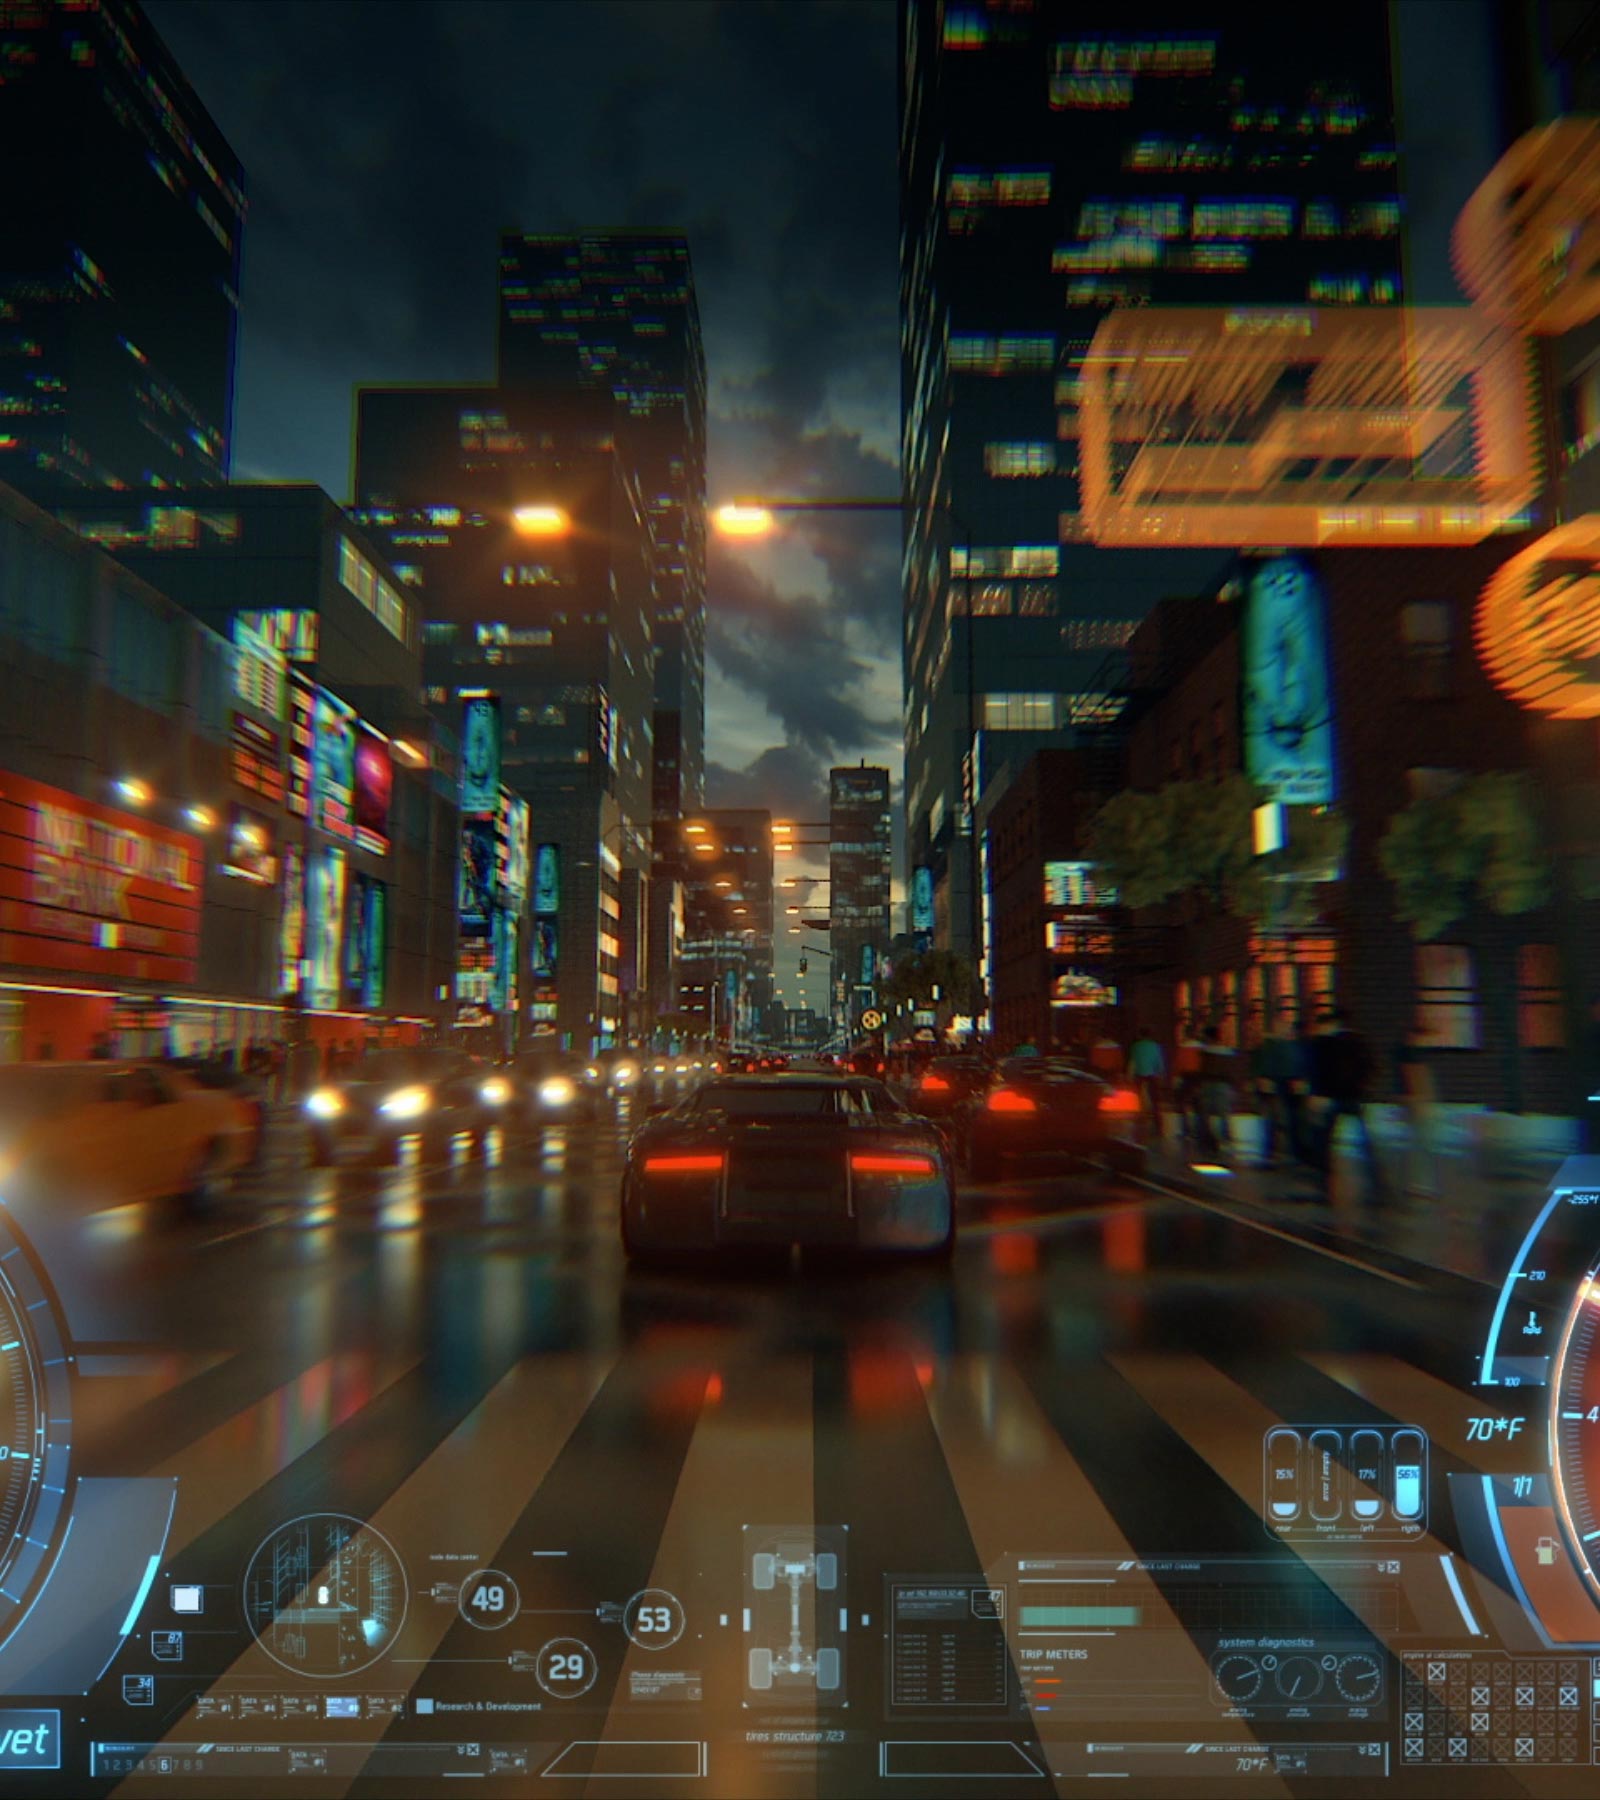 Un video în care o mașină este urmărită din spate într-un joc video, în timp ce traversează o stradă urbană luminată puternic la lăsarea serii.